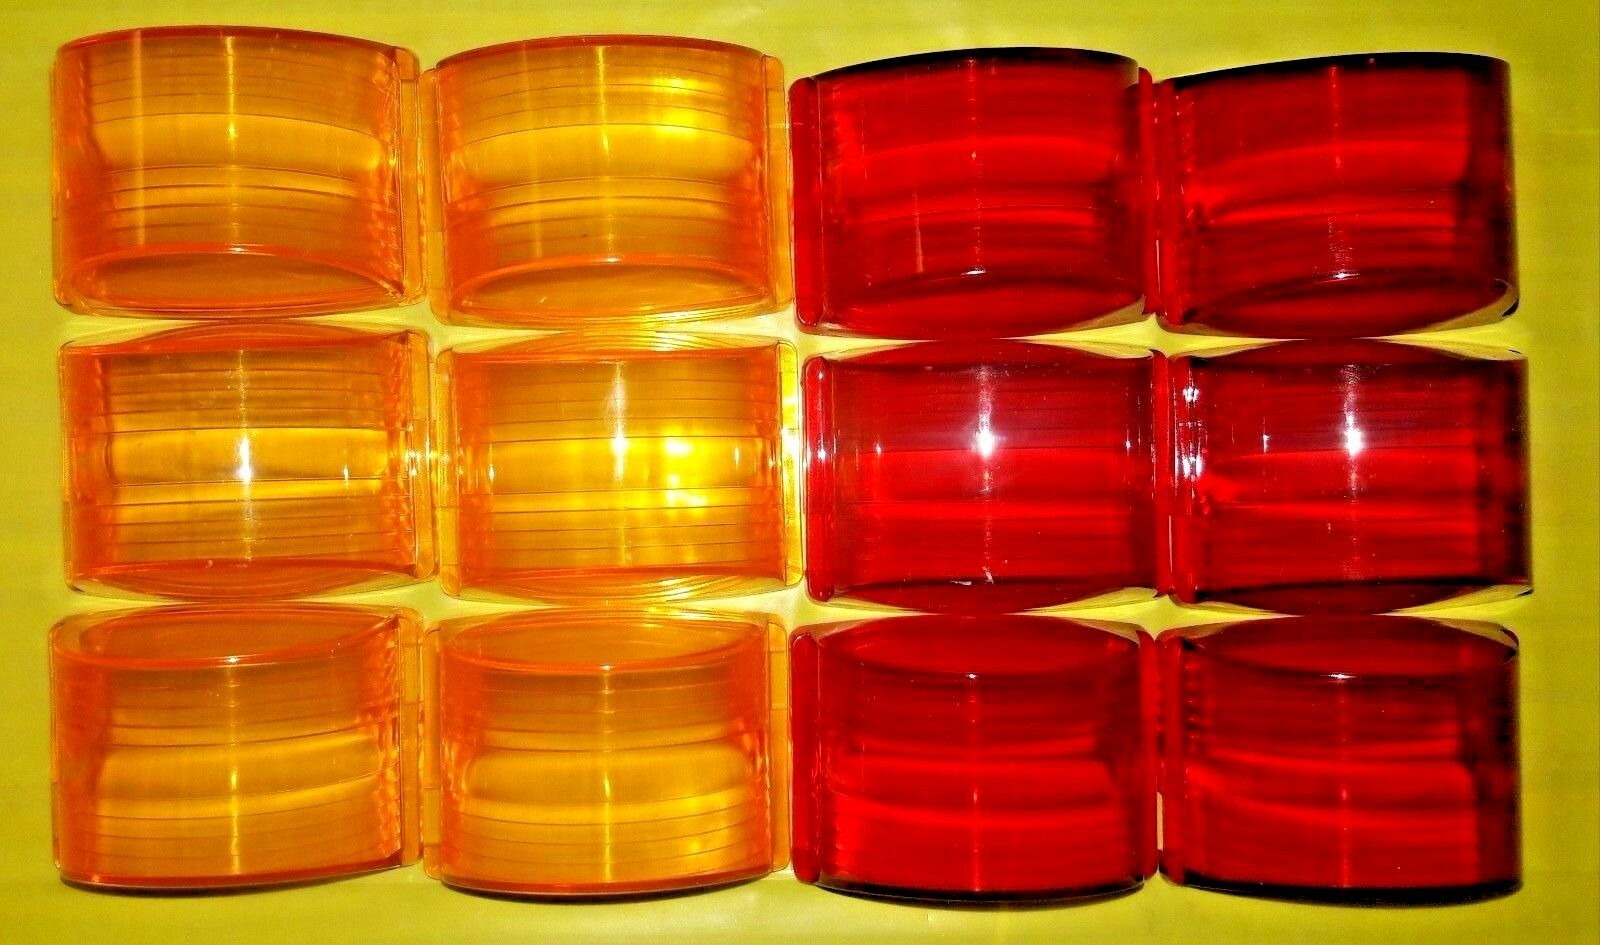 Lot of 12 lenses - 6 AMBER + 6 RED - MARKER LIGHT LENSES ; MS35421-1 & MS35421-2